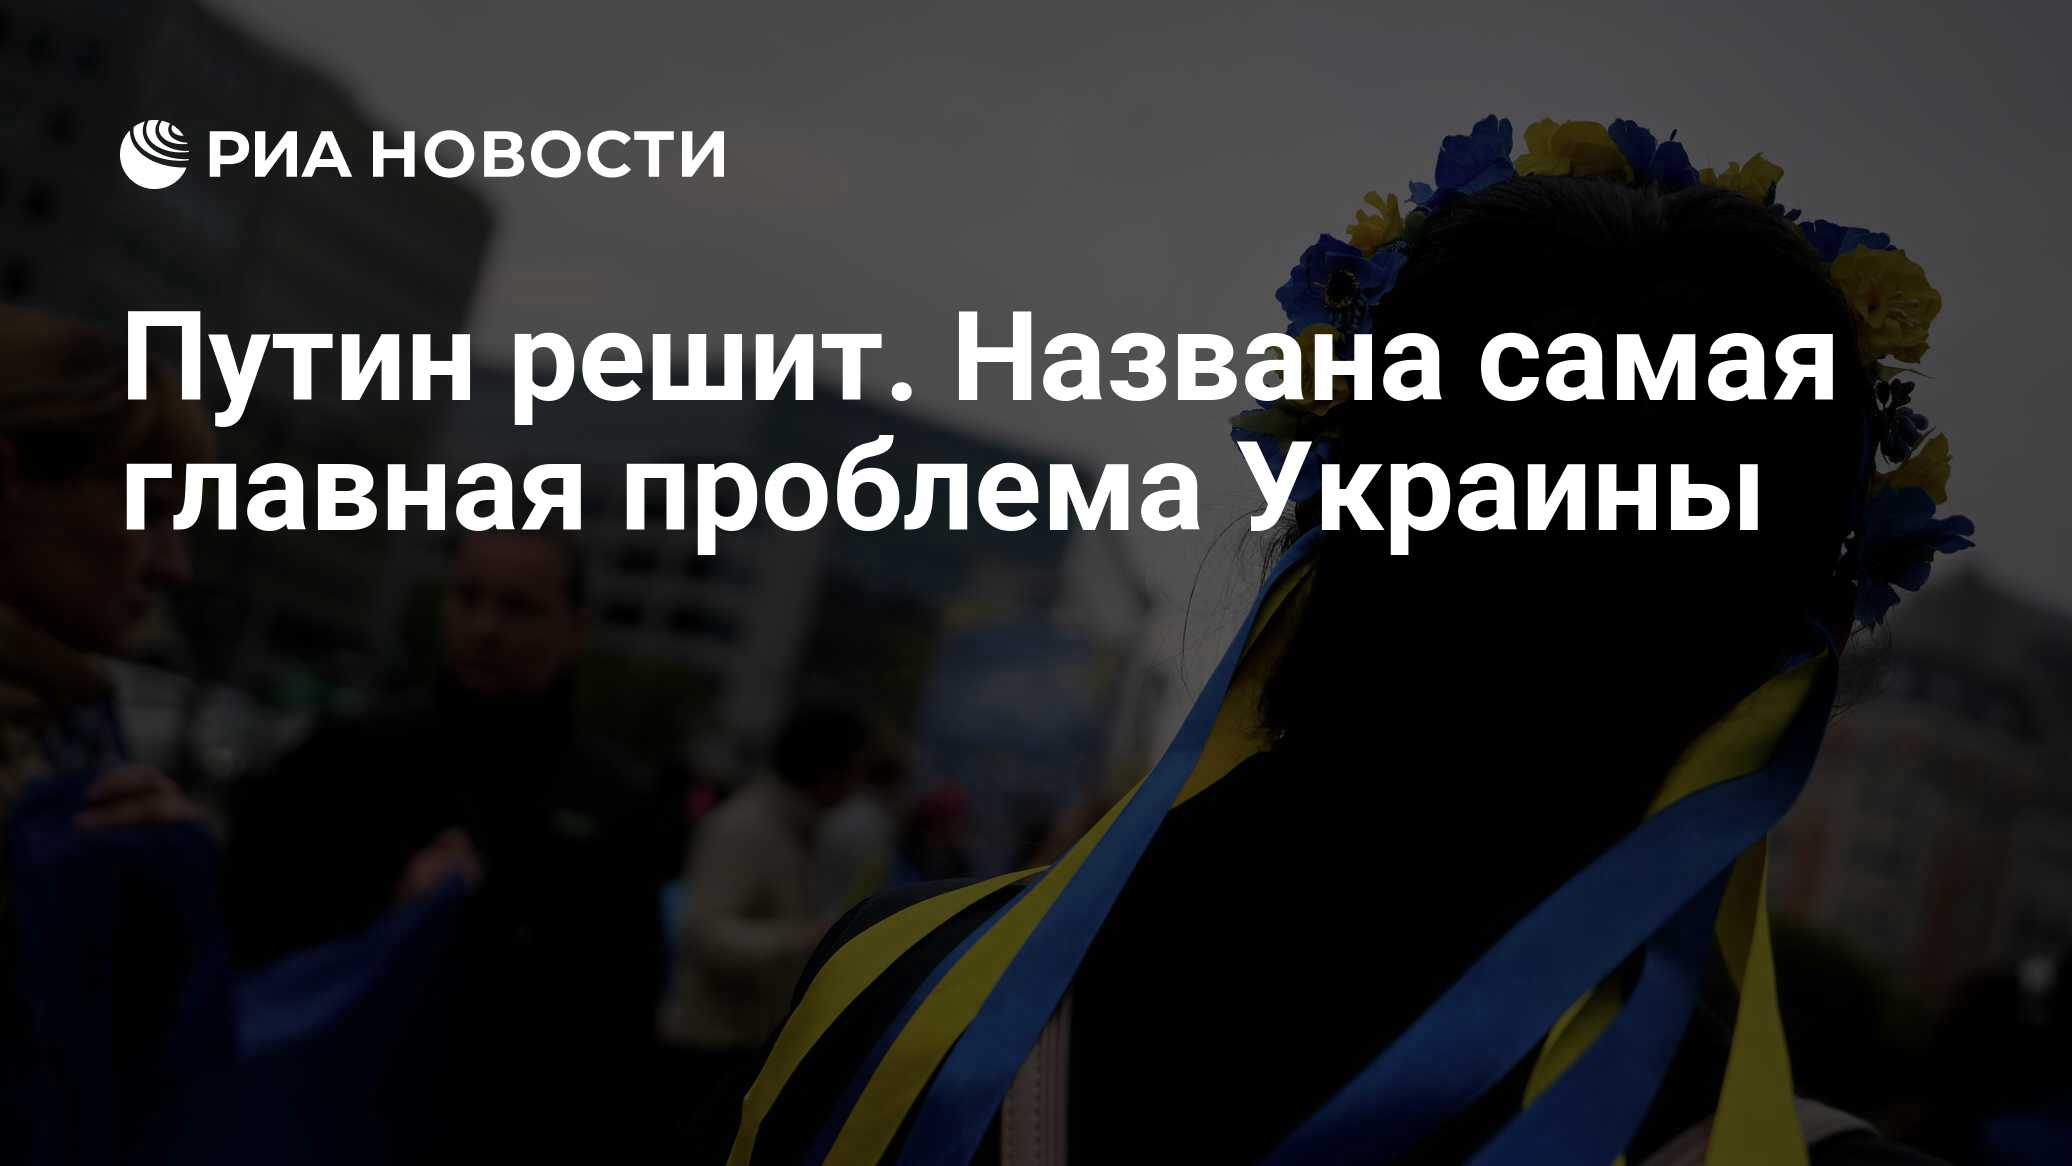 Украинские риа новости